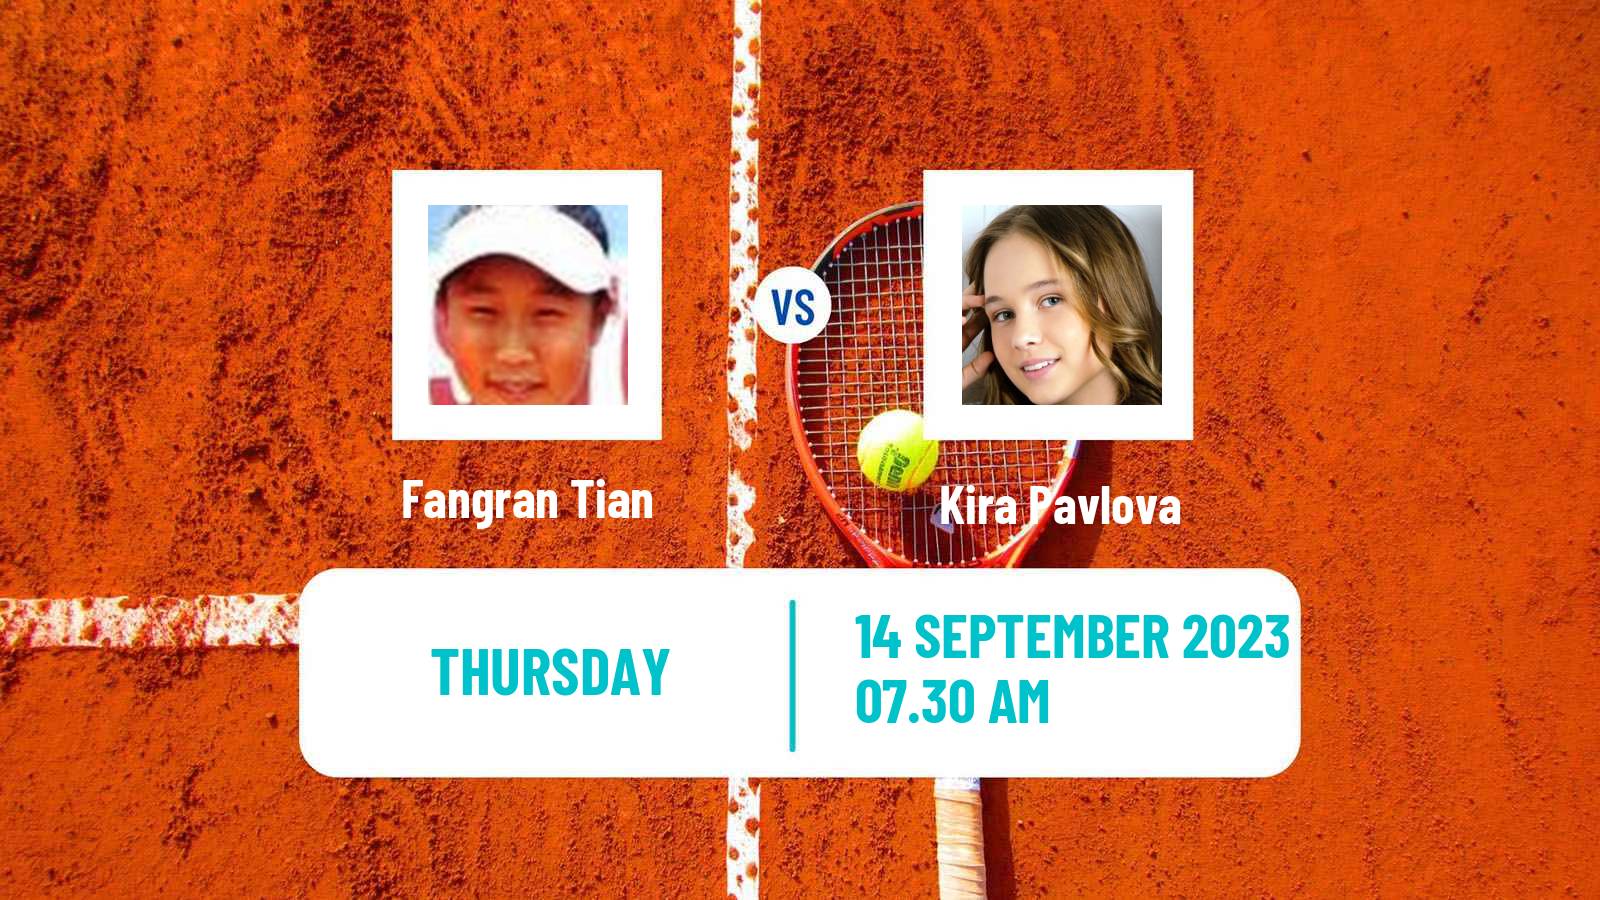 Tennis ITF W25 Leiria Women Fangran Tian - Kira Pavlova